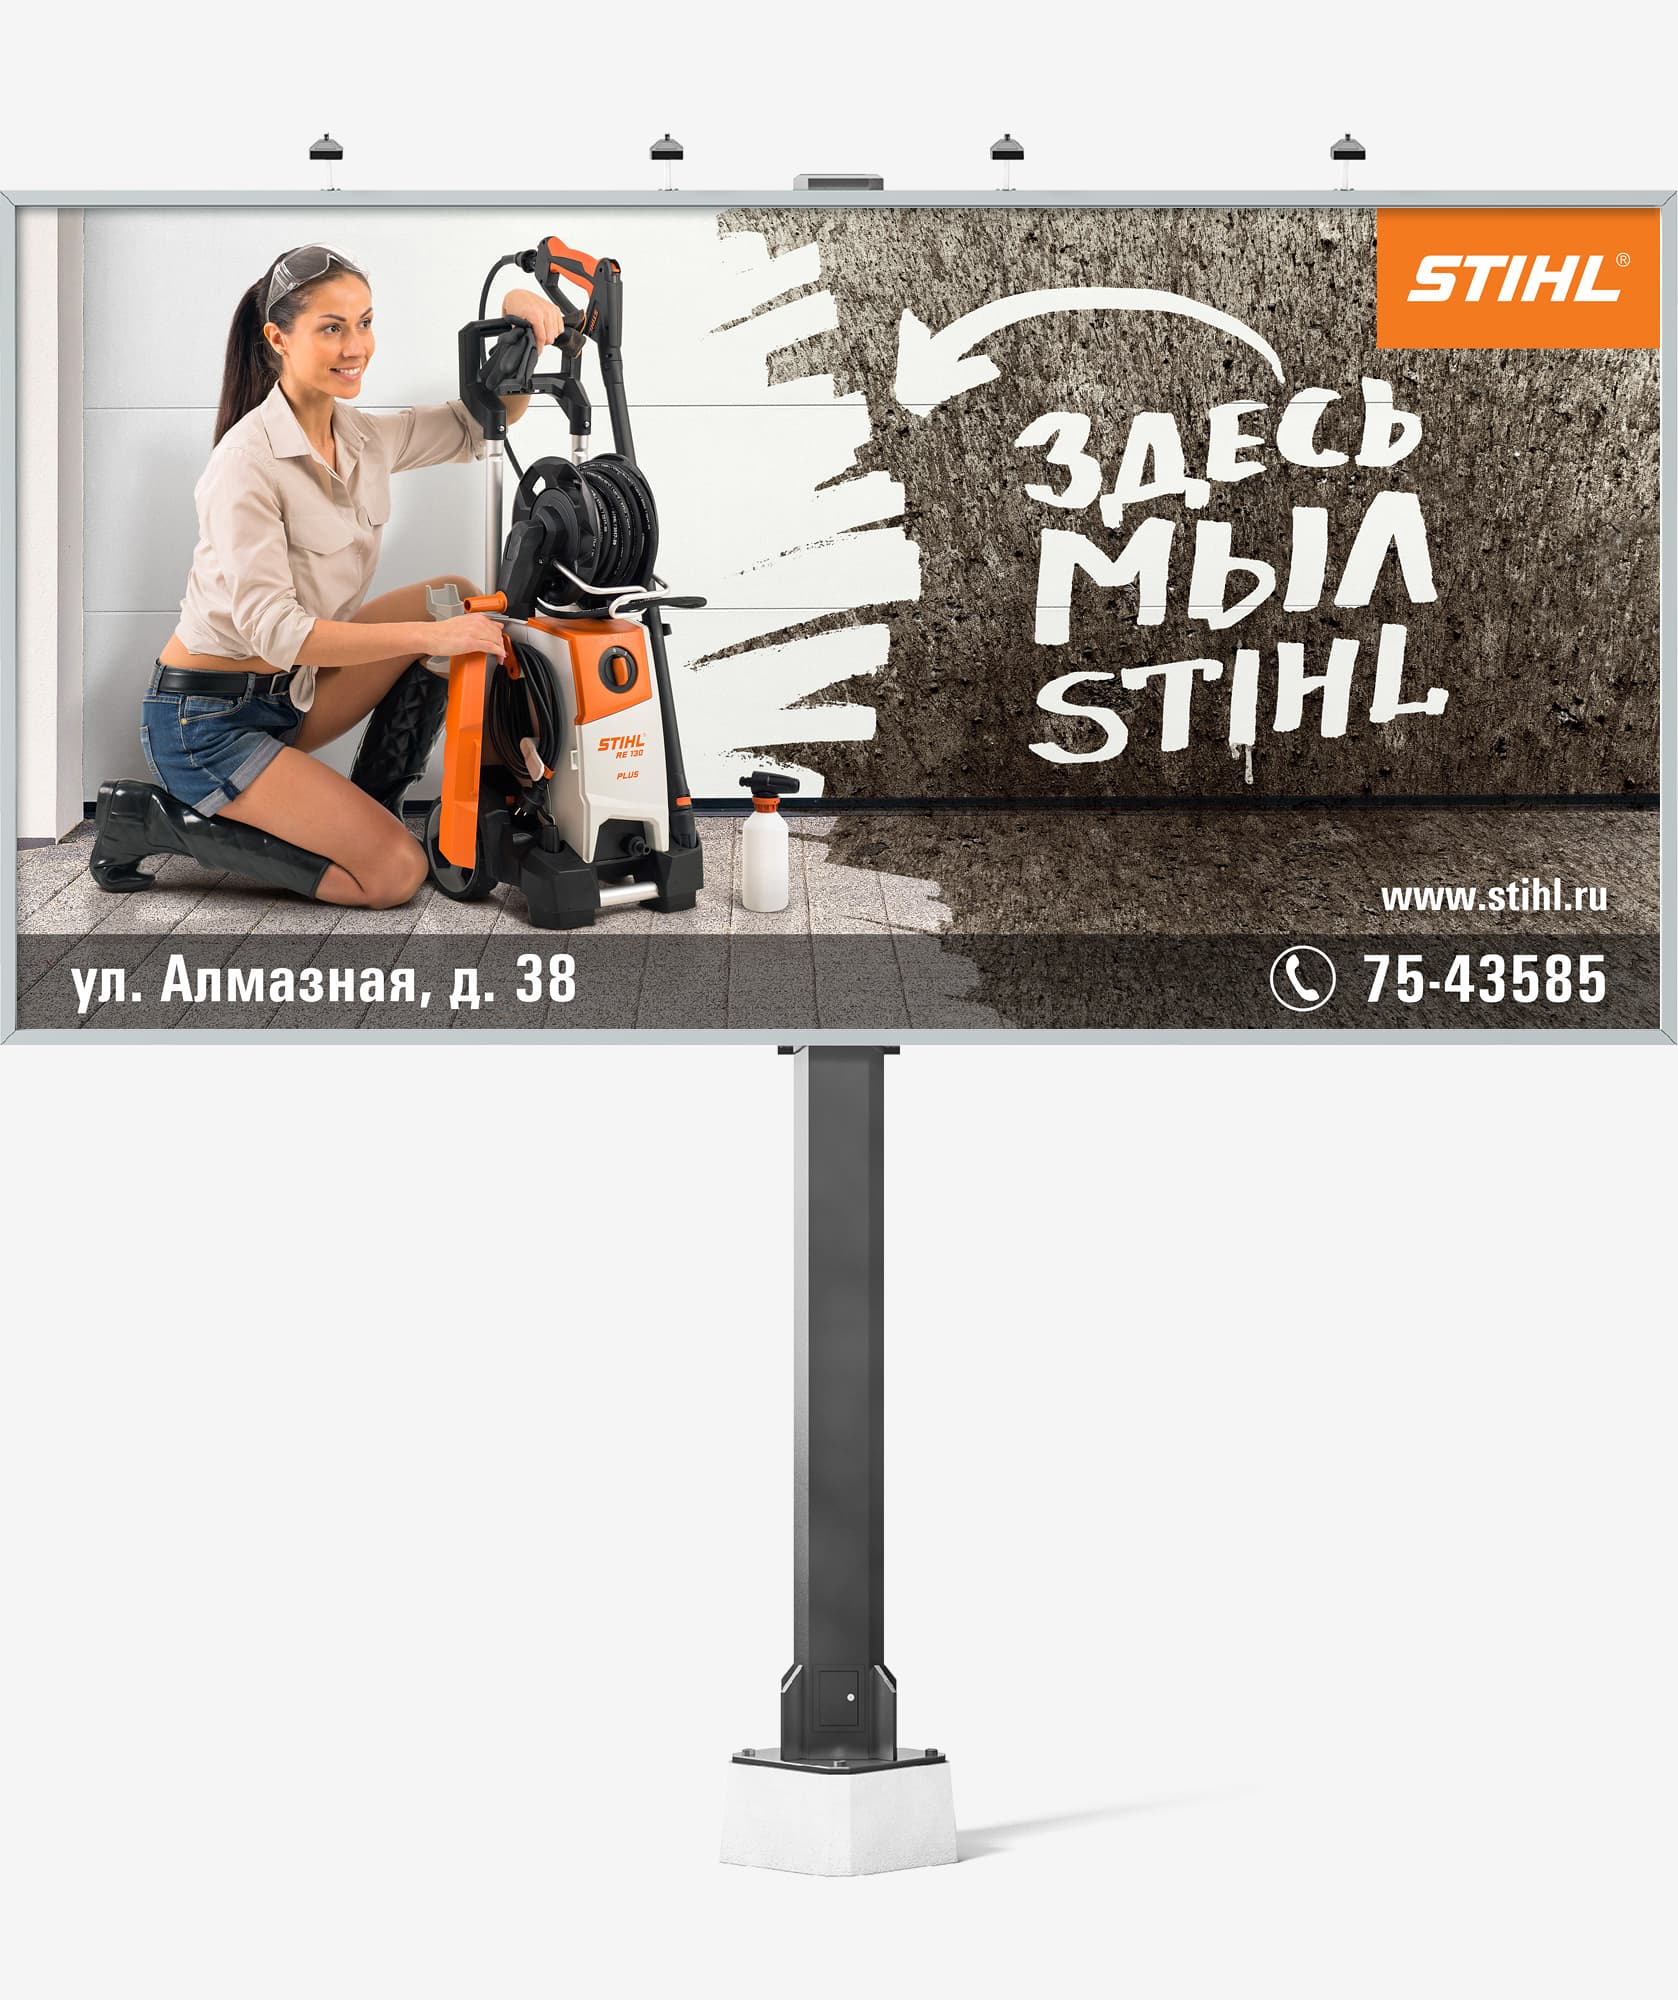 Разработка дизайна креативного рекламного билборда для рекламной кампании моек высокого давления компании STIHL